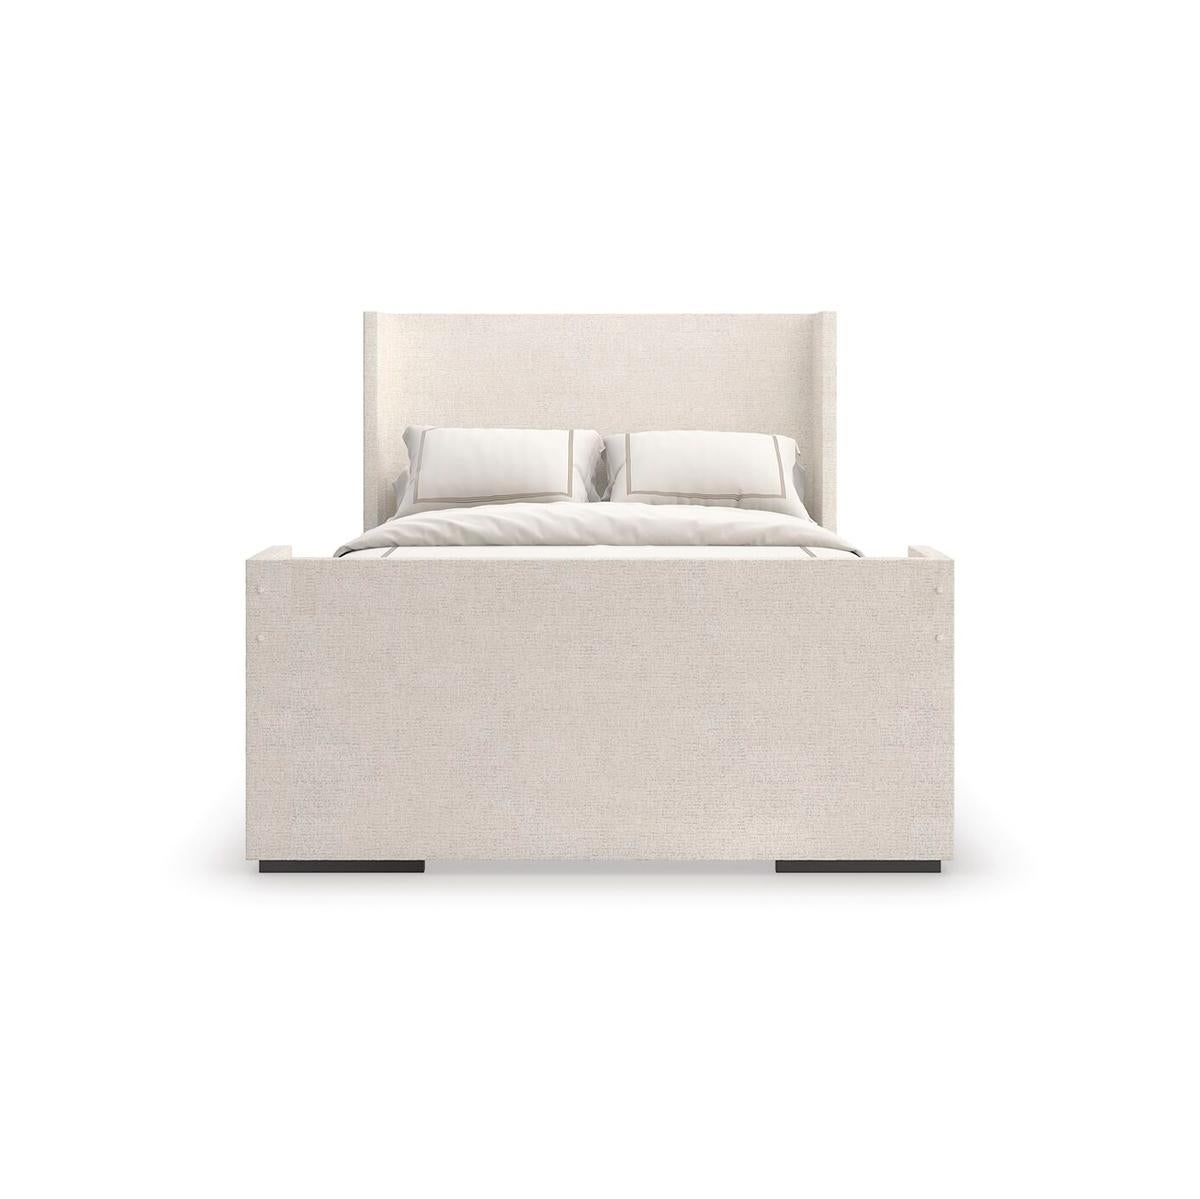 Das mit einem weichen Chenille-Stoff bezogene Bett strahlt mühelose Eleganz und einhüllenden Komfort aus. Die schlichte, geometrische Form und der beruhigende, neutrale Farbton passen hervorragend zu klassischer oder moderner Designästhetik.

Er